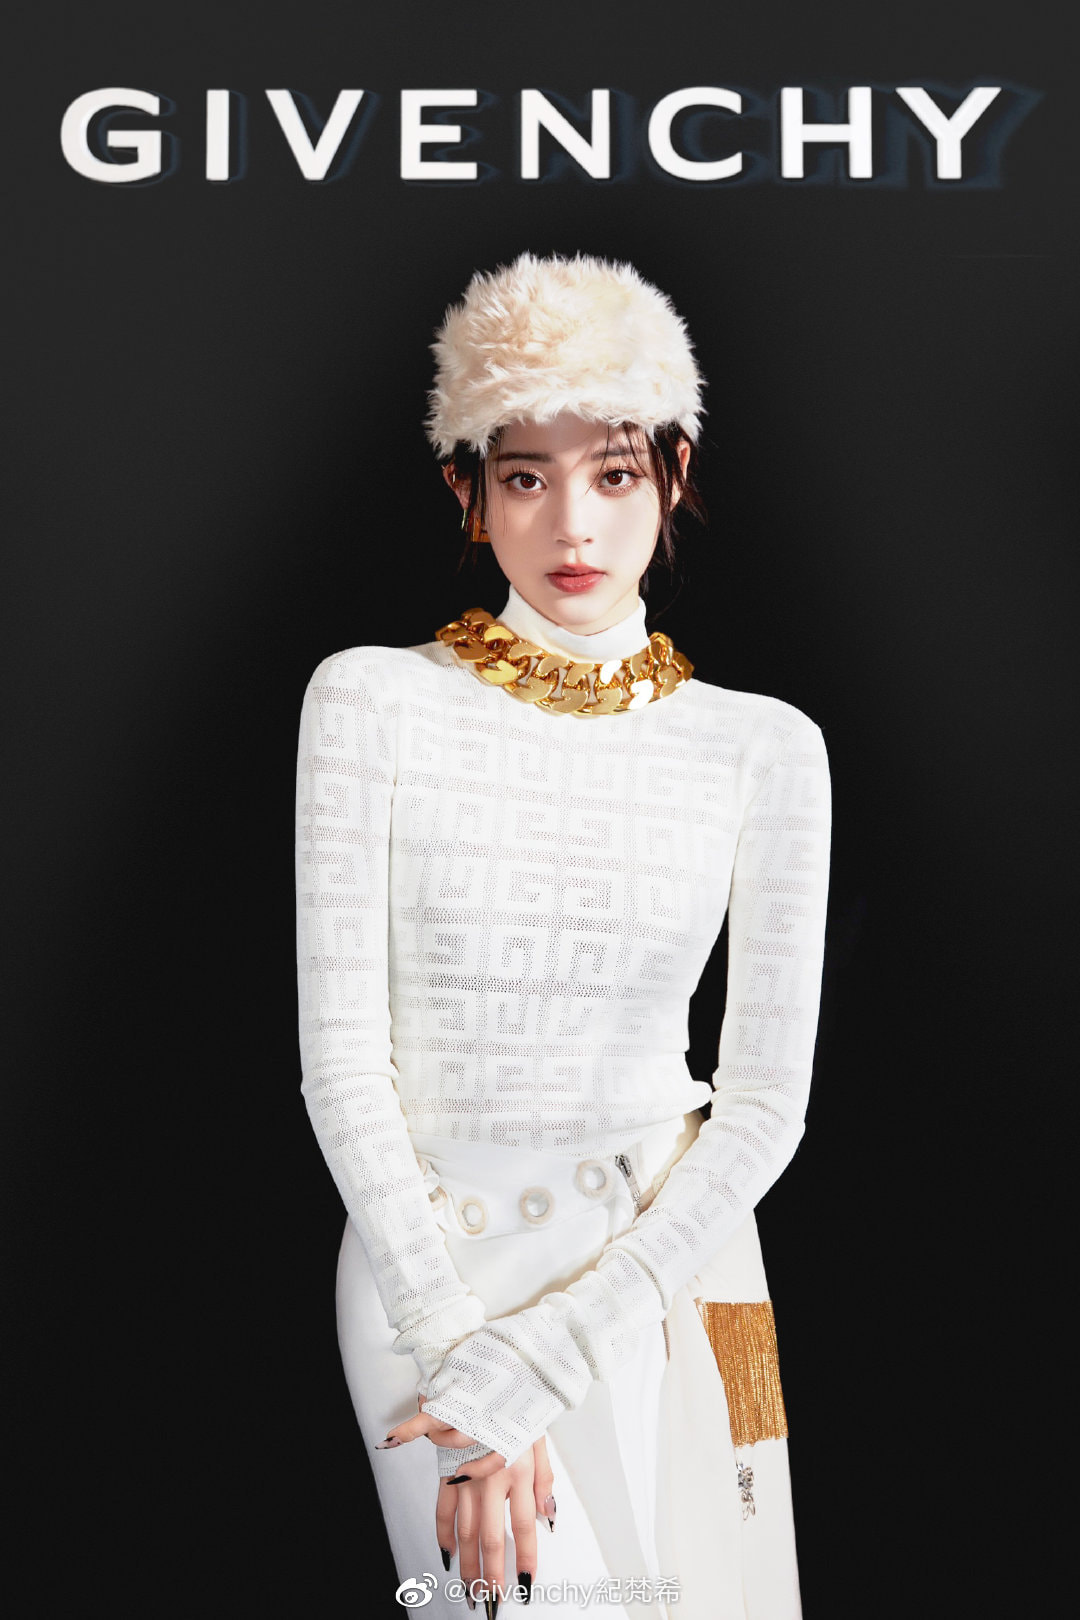 Dân tình trầm trồ không ngớt với nhan sắc quá đỗi xinh đẹp của Âu Dương Na Na. Những hình ảnh mới nhất của mỹ nhân 21 tuổi nhanh chóng đã được đăng tải trên tài khoản weibo chính chủ của Givenchy.